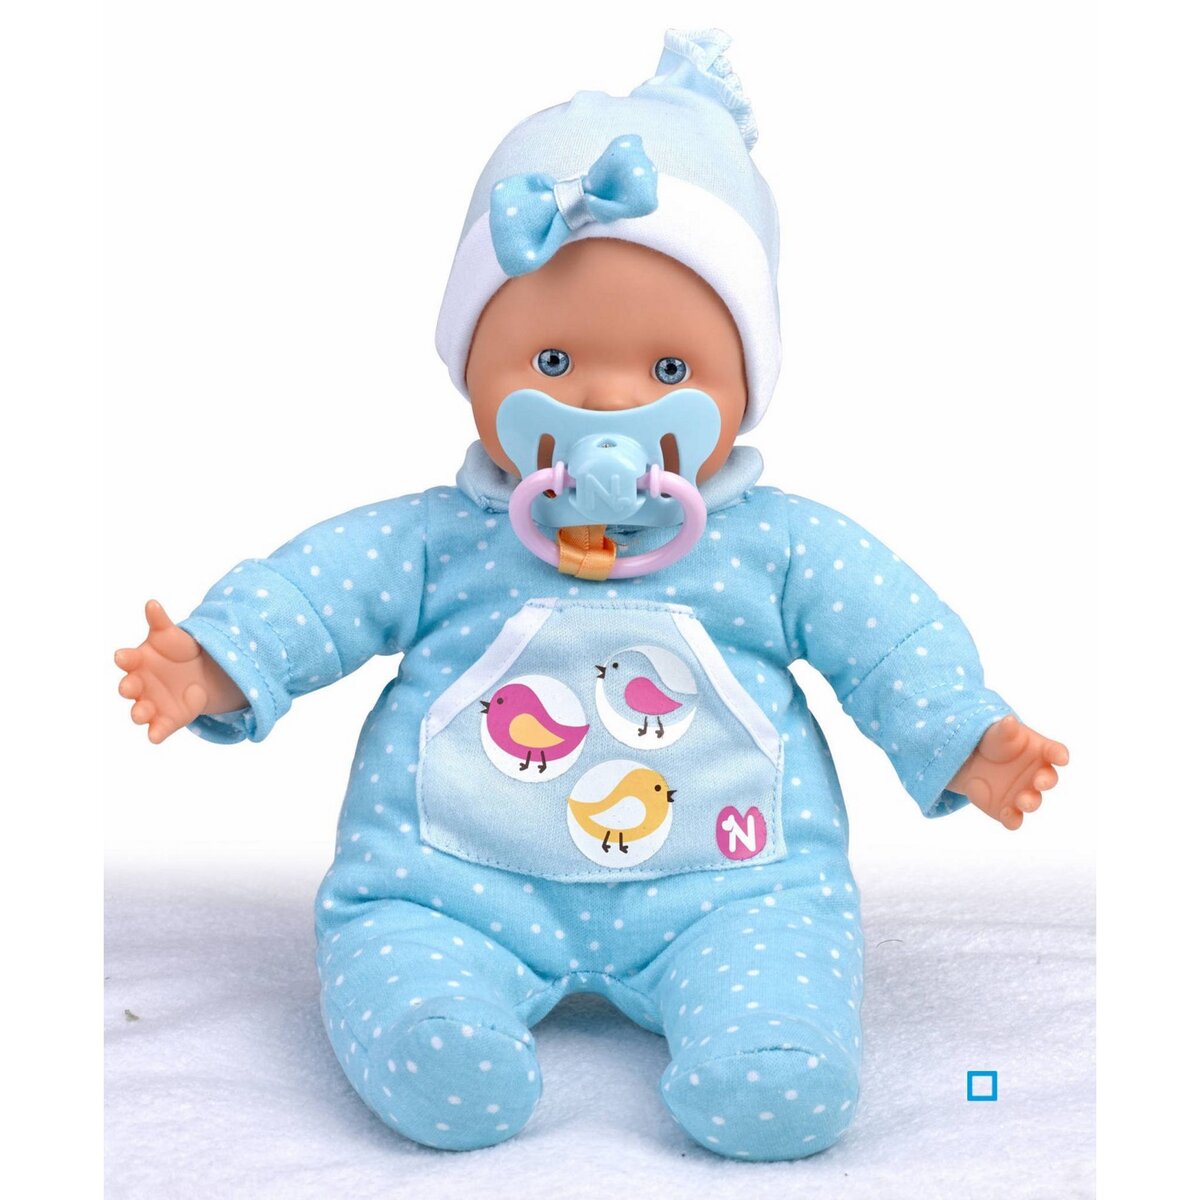 Poupon / poupée Nenuco Soft bleu neuf étiqueté